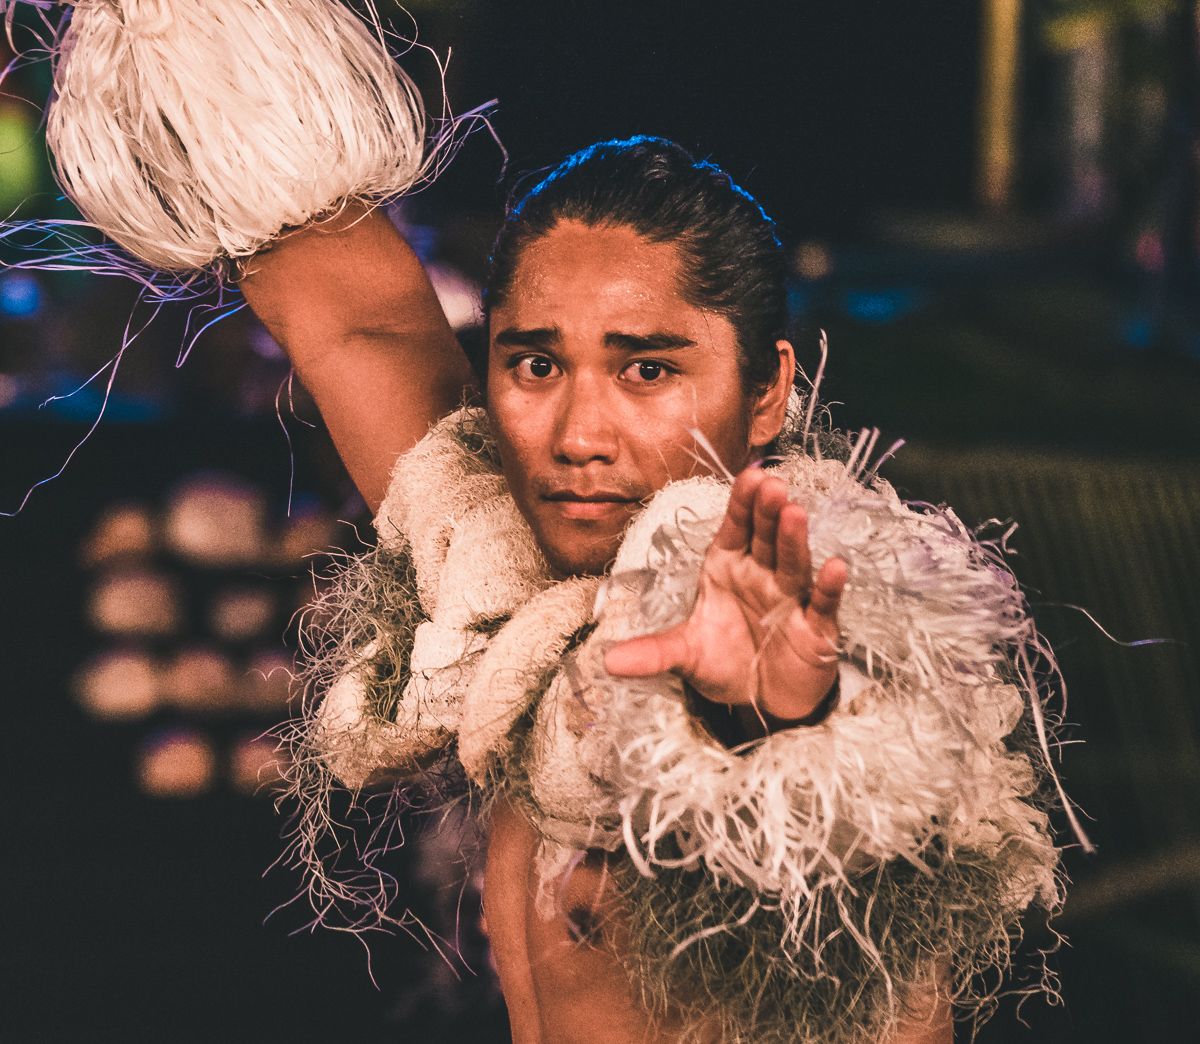 beautiful tahitian man performing cultural dance